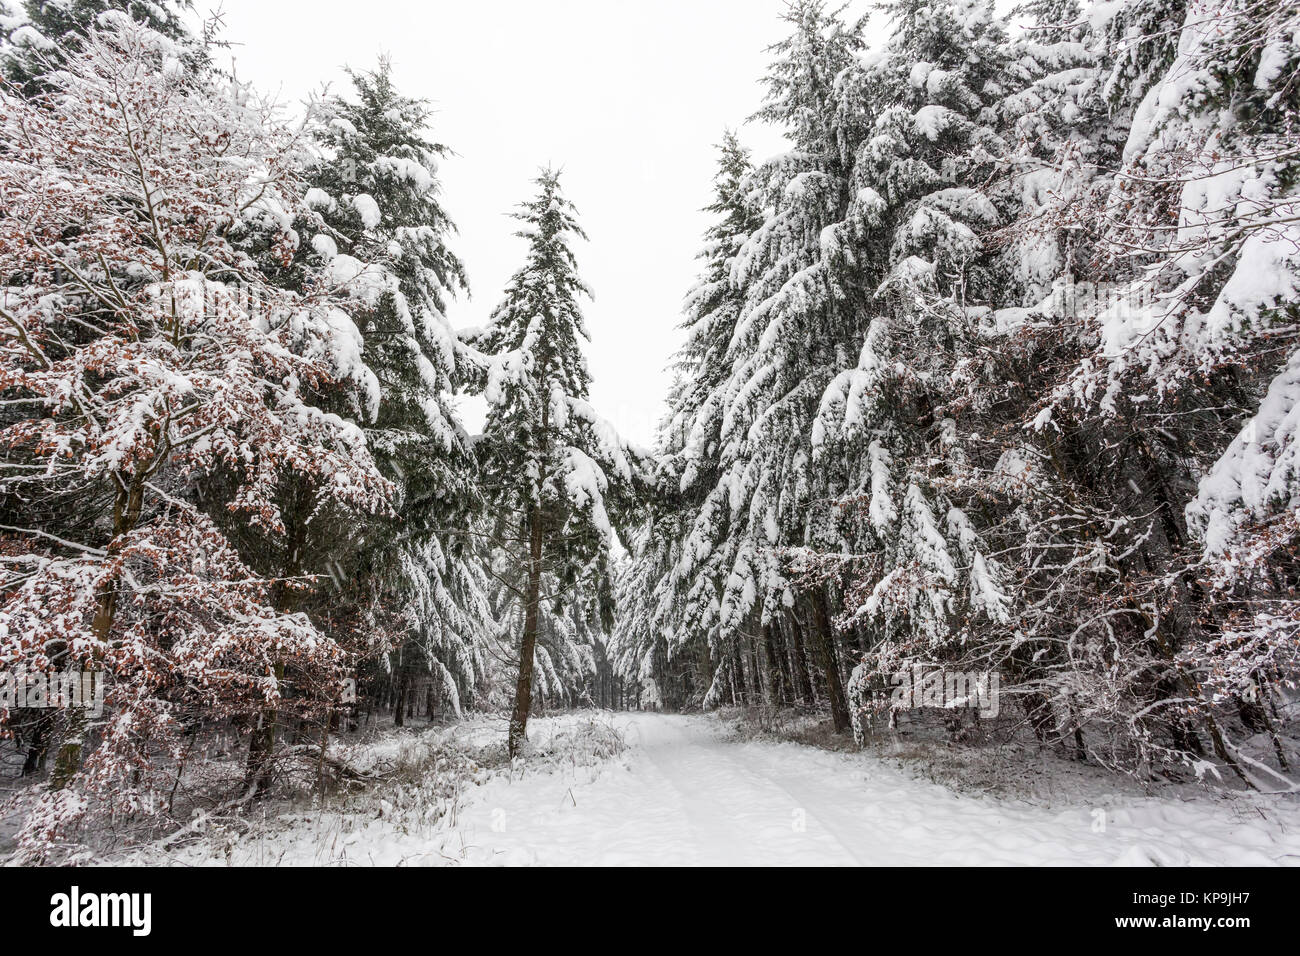 Carretera cubierta de nieve en un bosque nevado invierno blanco en Hesse, Alemania Foto de stock